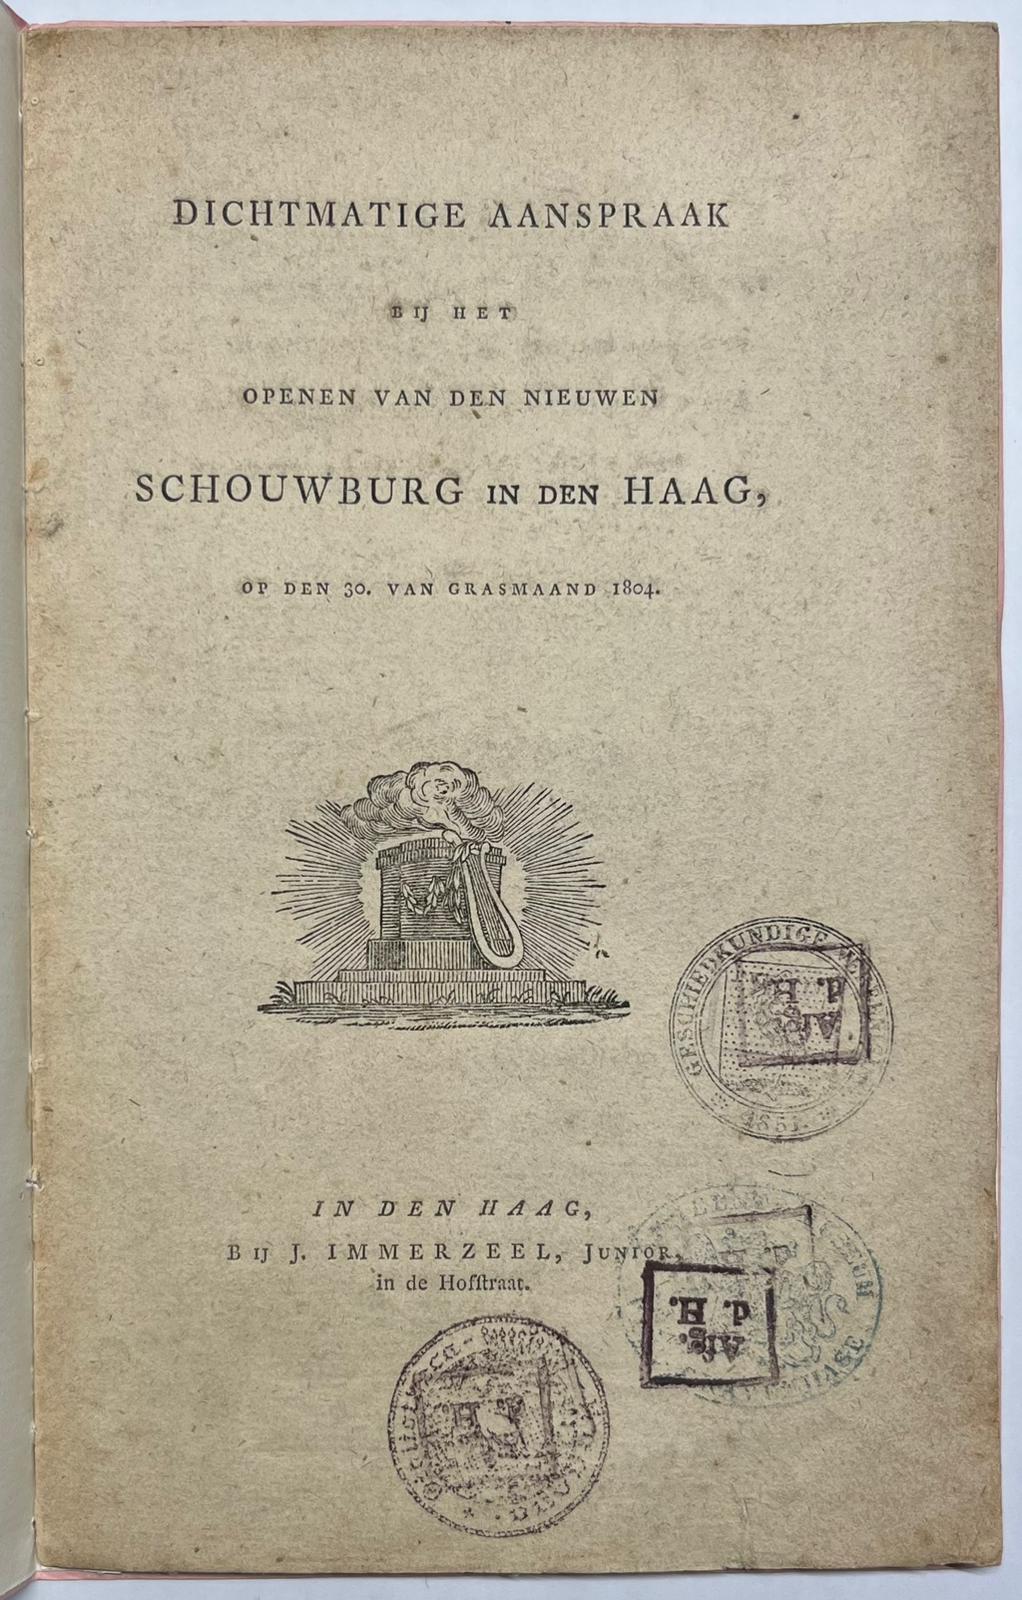 [Printed publication, 1804, commemorative poem] Dichtmatige Aanspraak bij het openen van den nieuwen Schouwburg in Den Haag, J. Immerzeel, Den Haag, 1804, 7 pp.